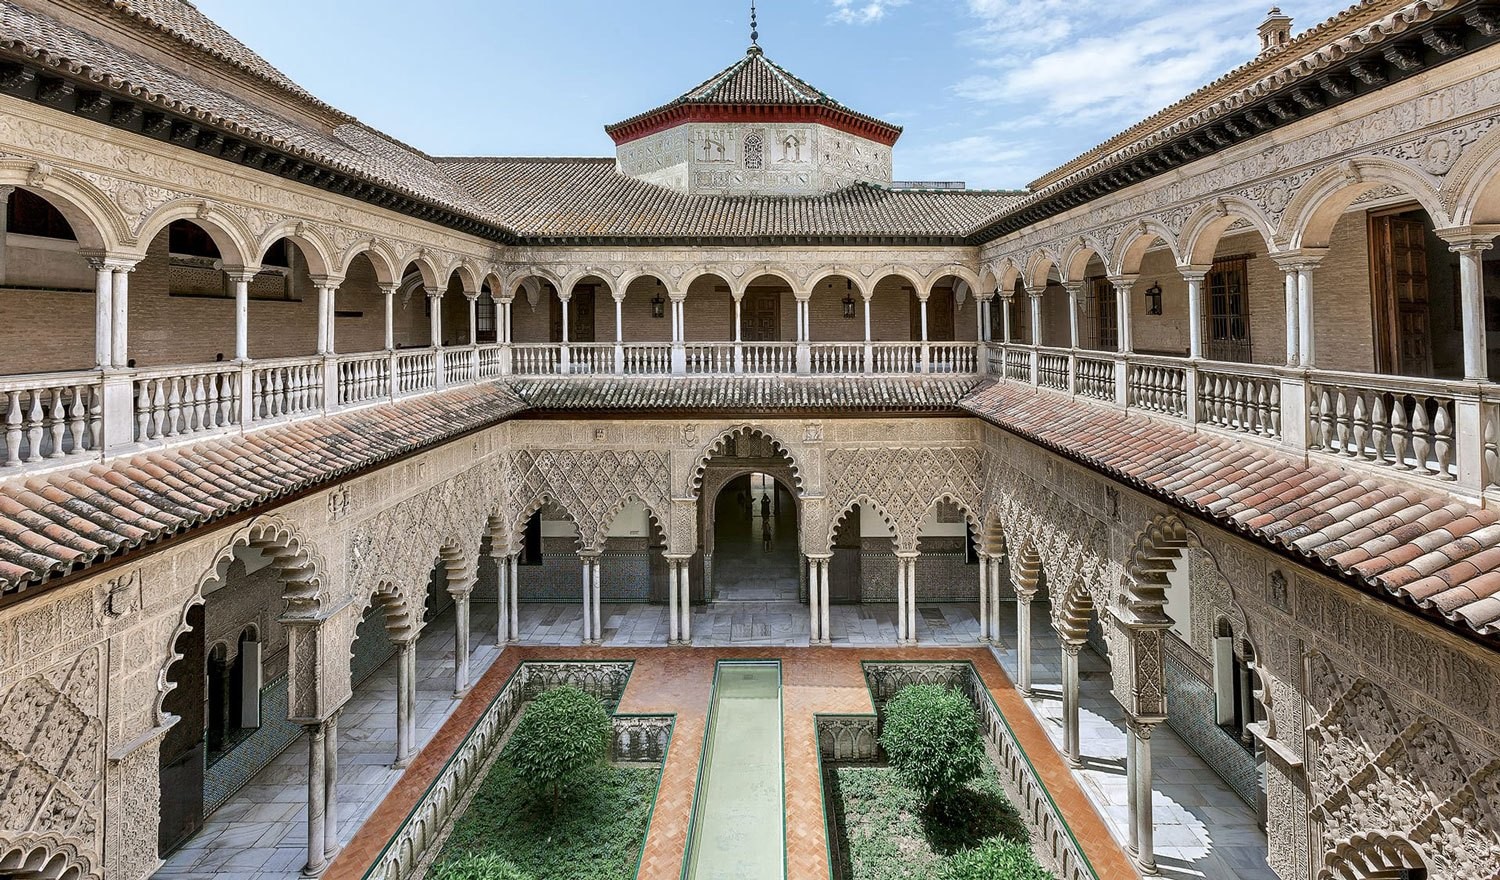 Conferencia sobre “El Real Alcázar de Sevilla” el 5 de marzo